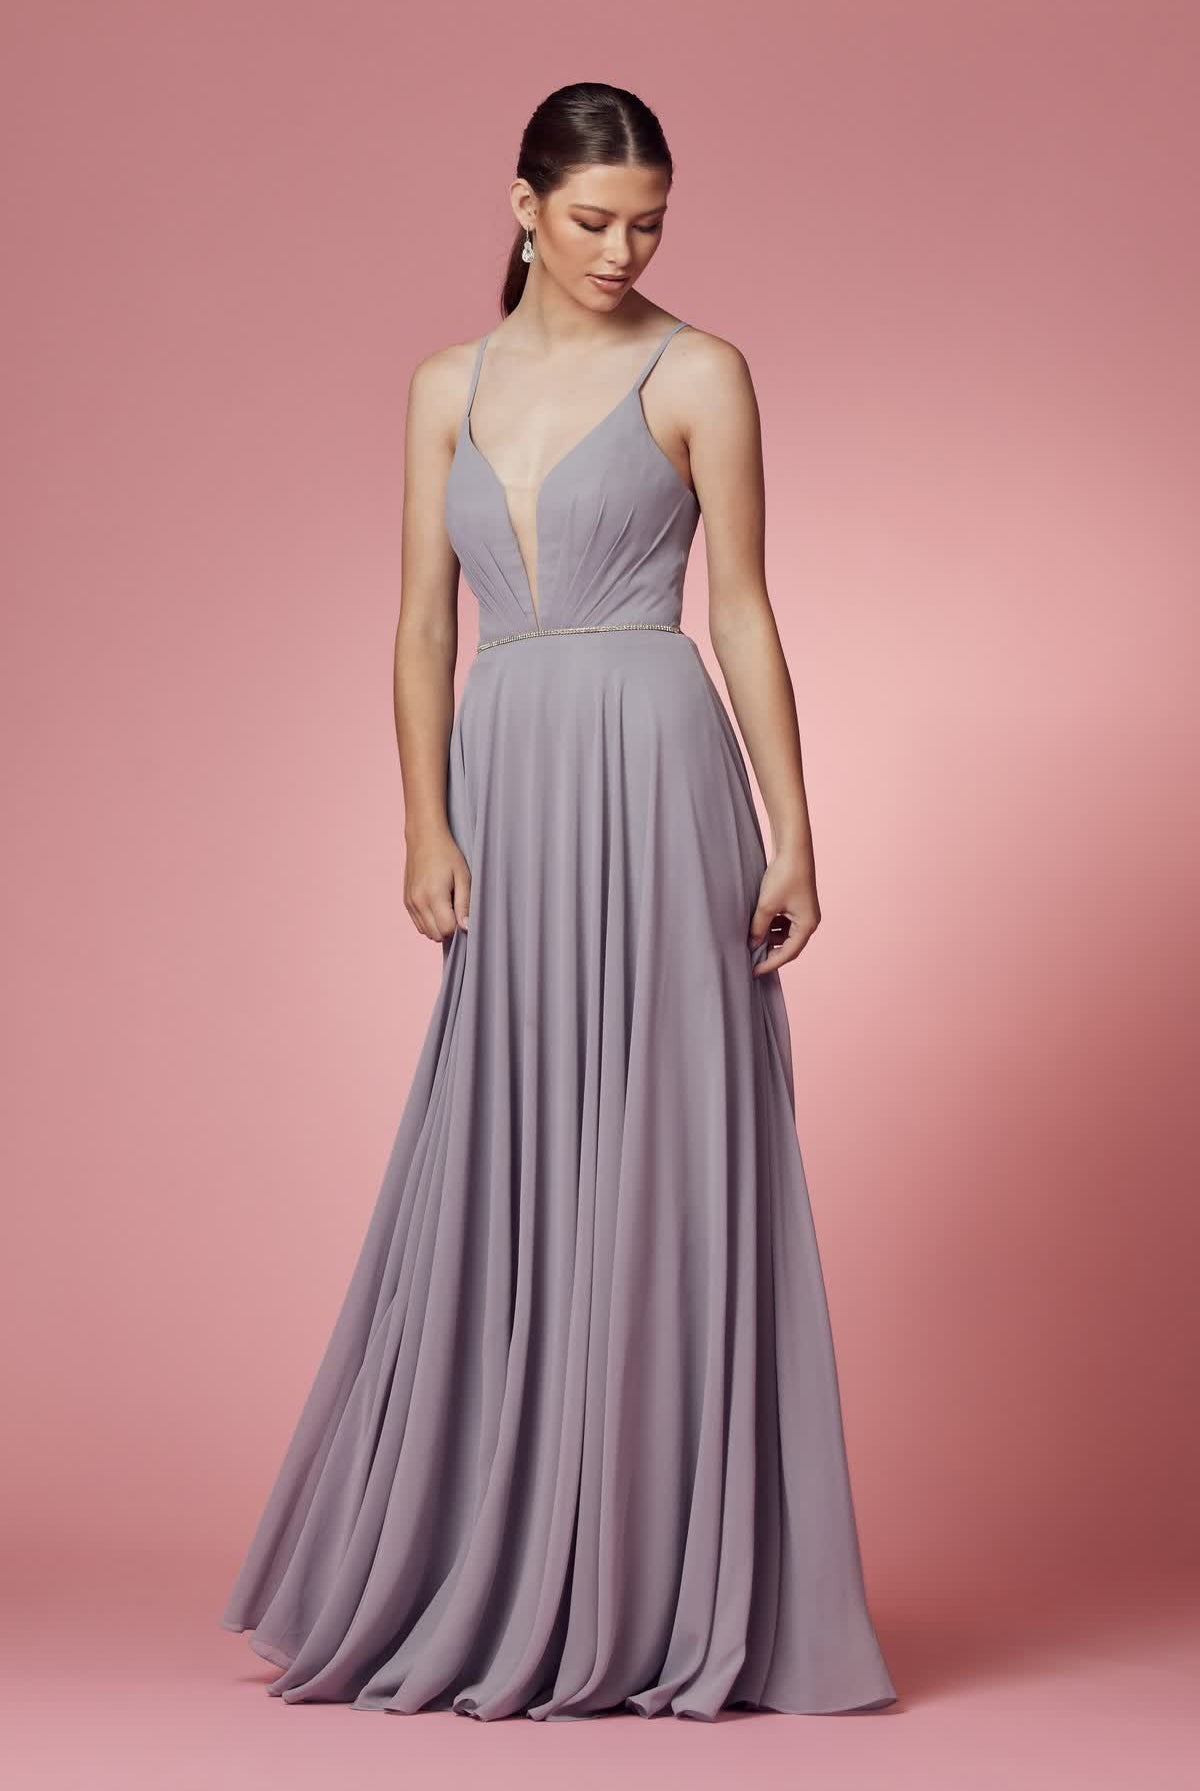 V-Neck Chiffon Plus Size Long Bridesmaid Dress NXR416P-Bridesmaid Dress-smcfashion.com